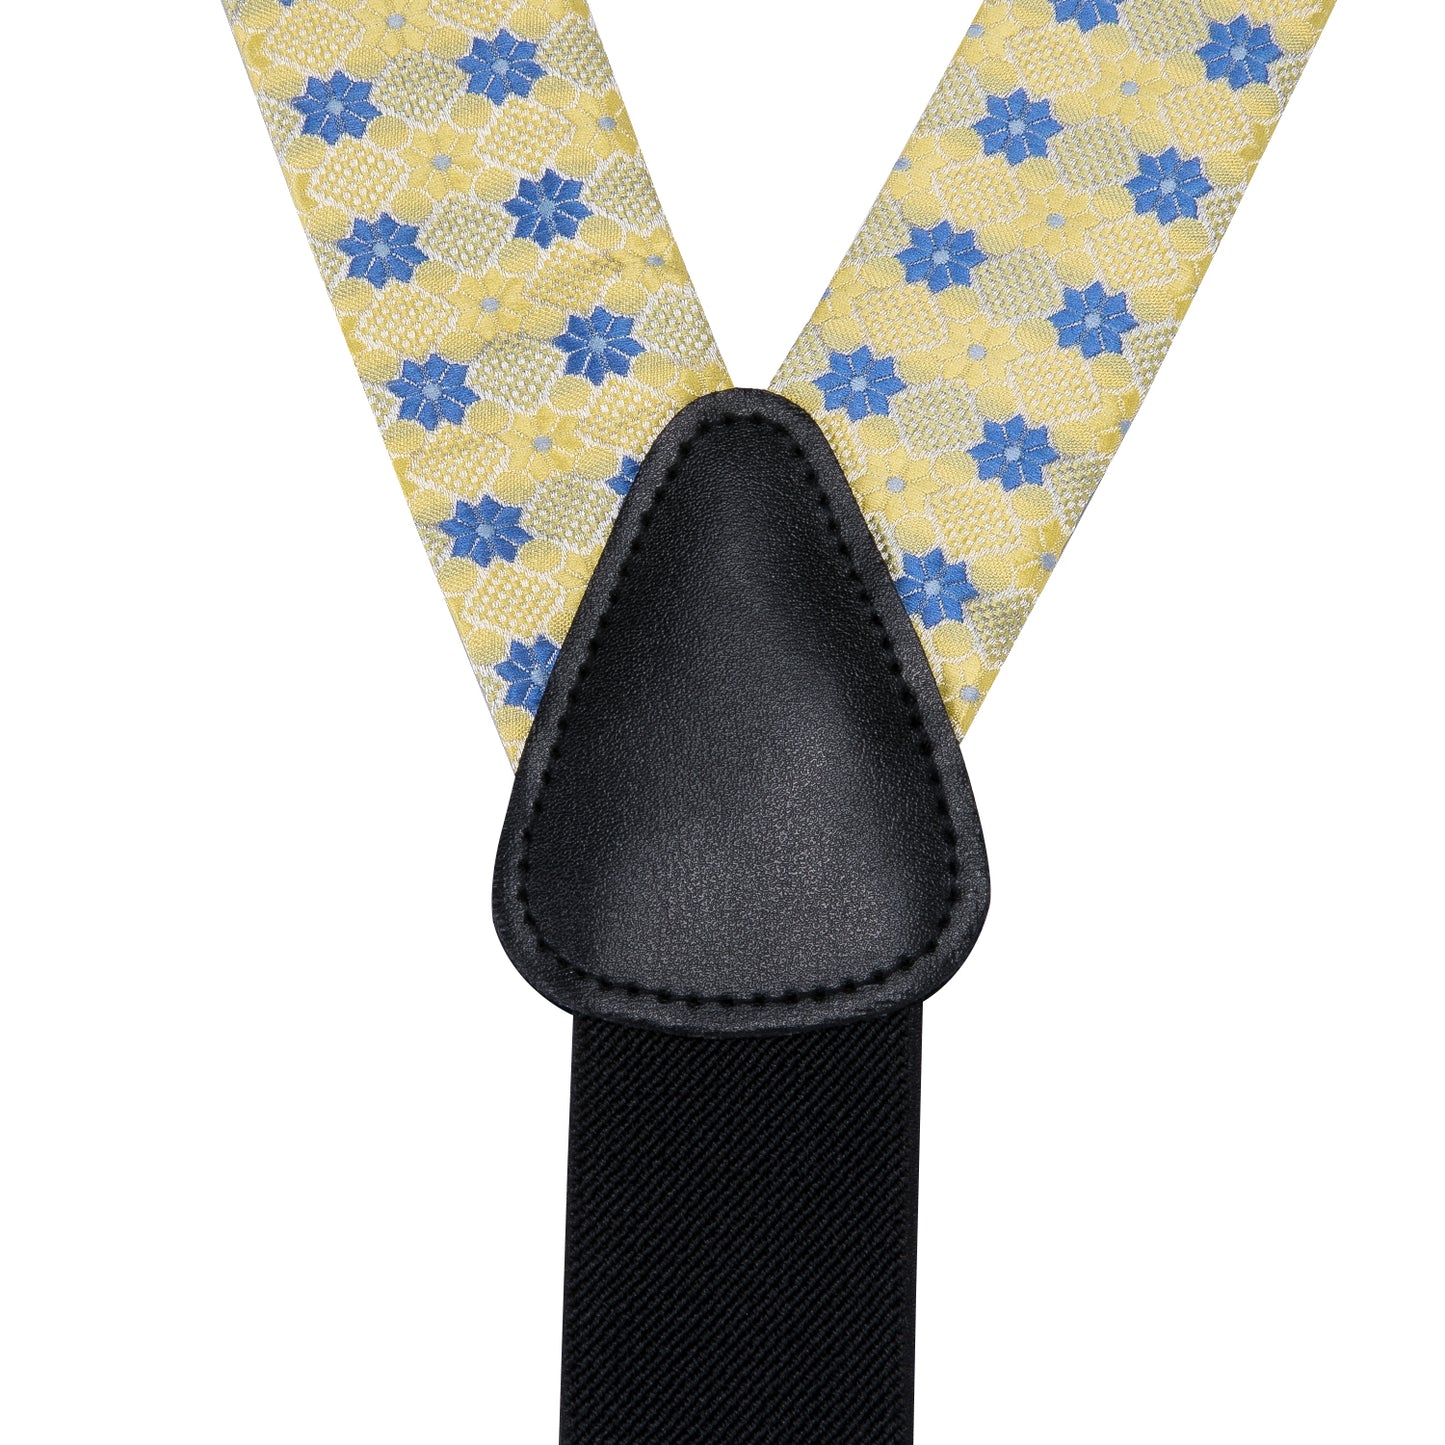 BD3020 Men's Braces Designer Clip Suspender Set [Blue Yolk]